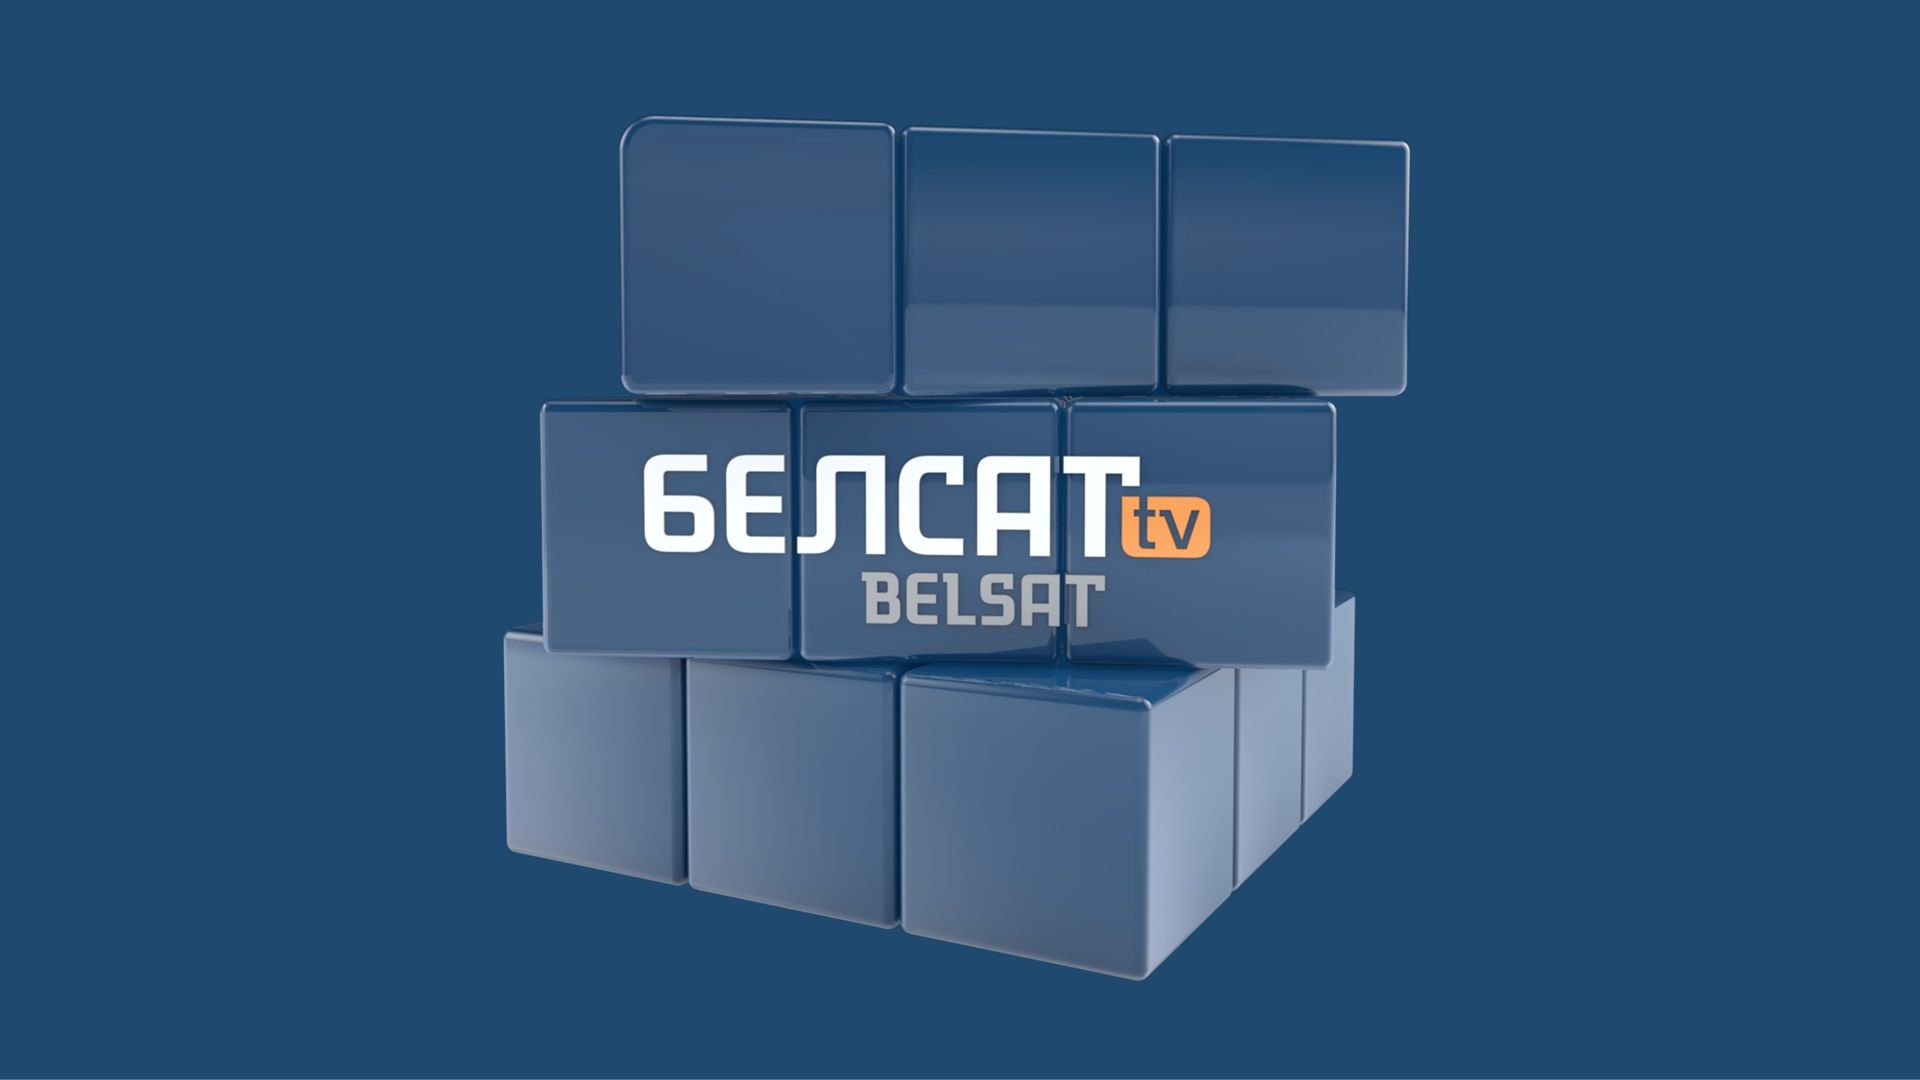 «Белсат TV» пропонує українським каналам безоплатне використання сигналу